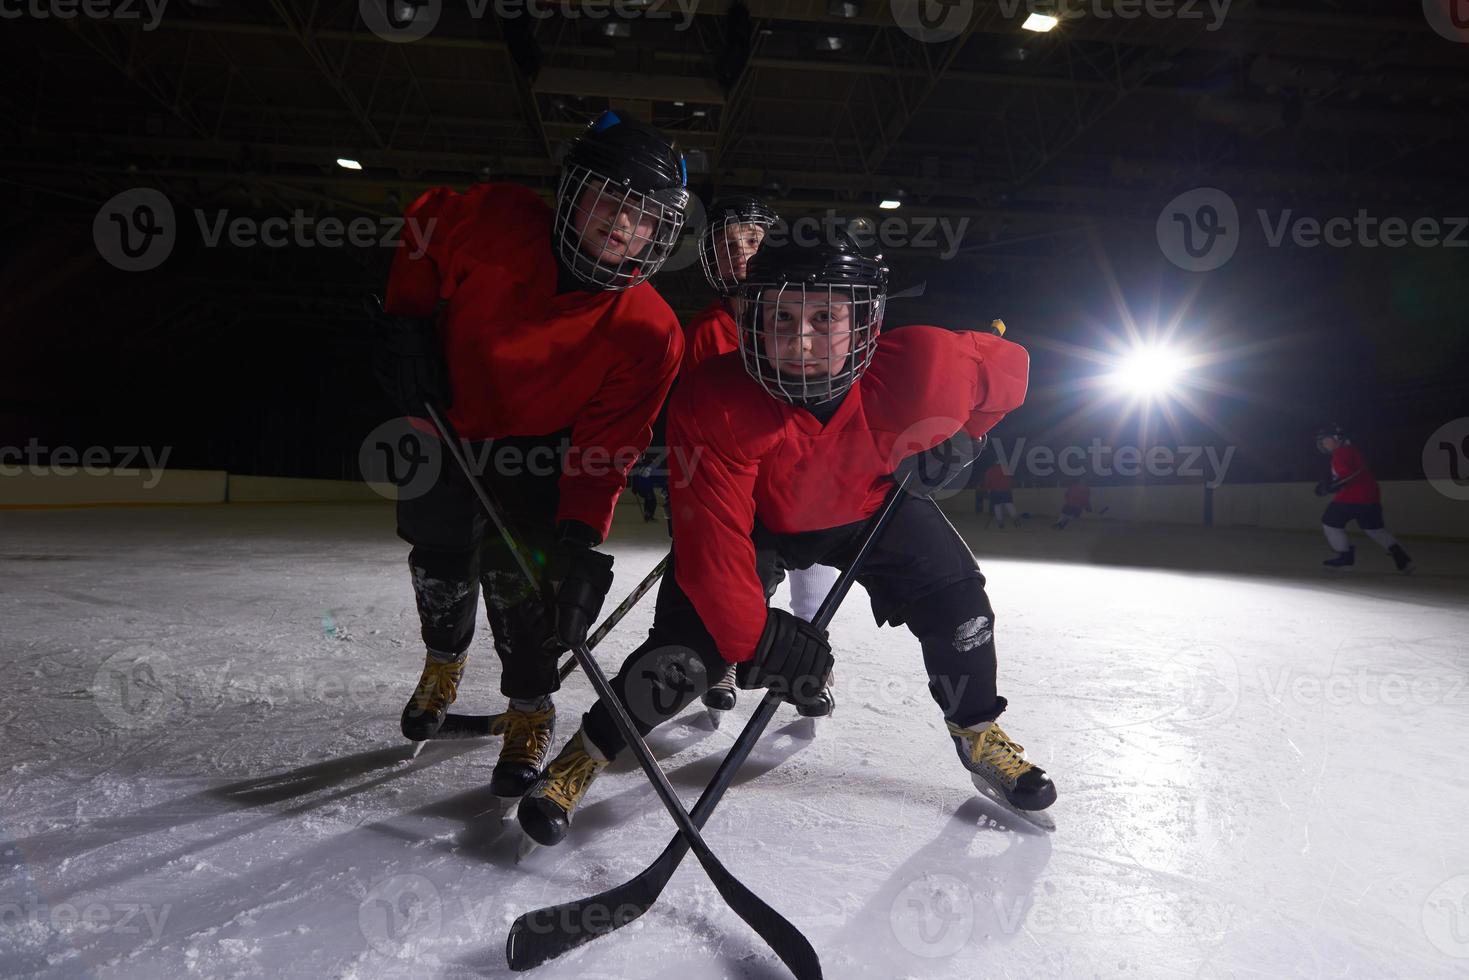 glückliche kindergruppe hockeymannschaft sportspieler foto